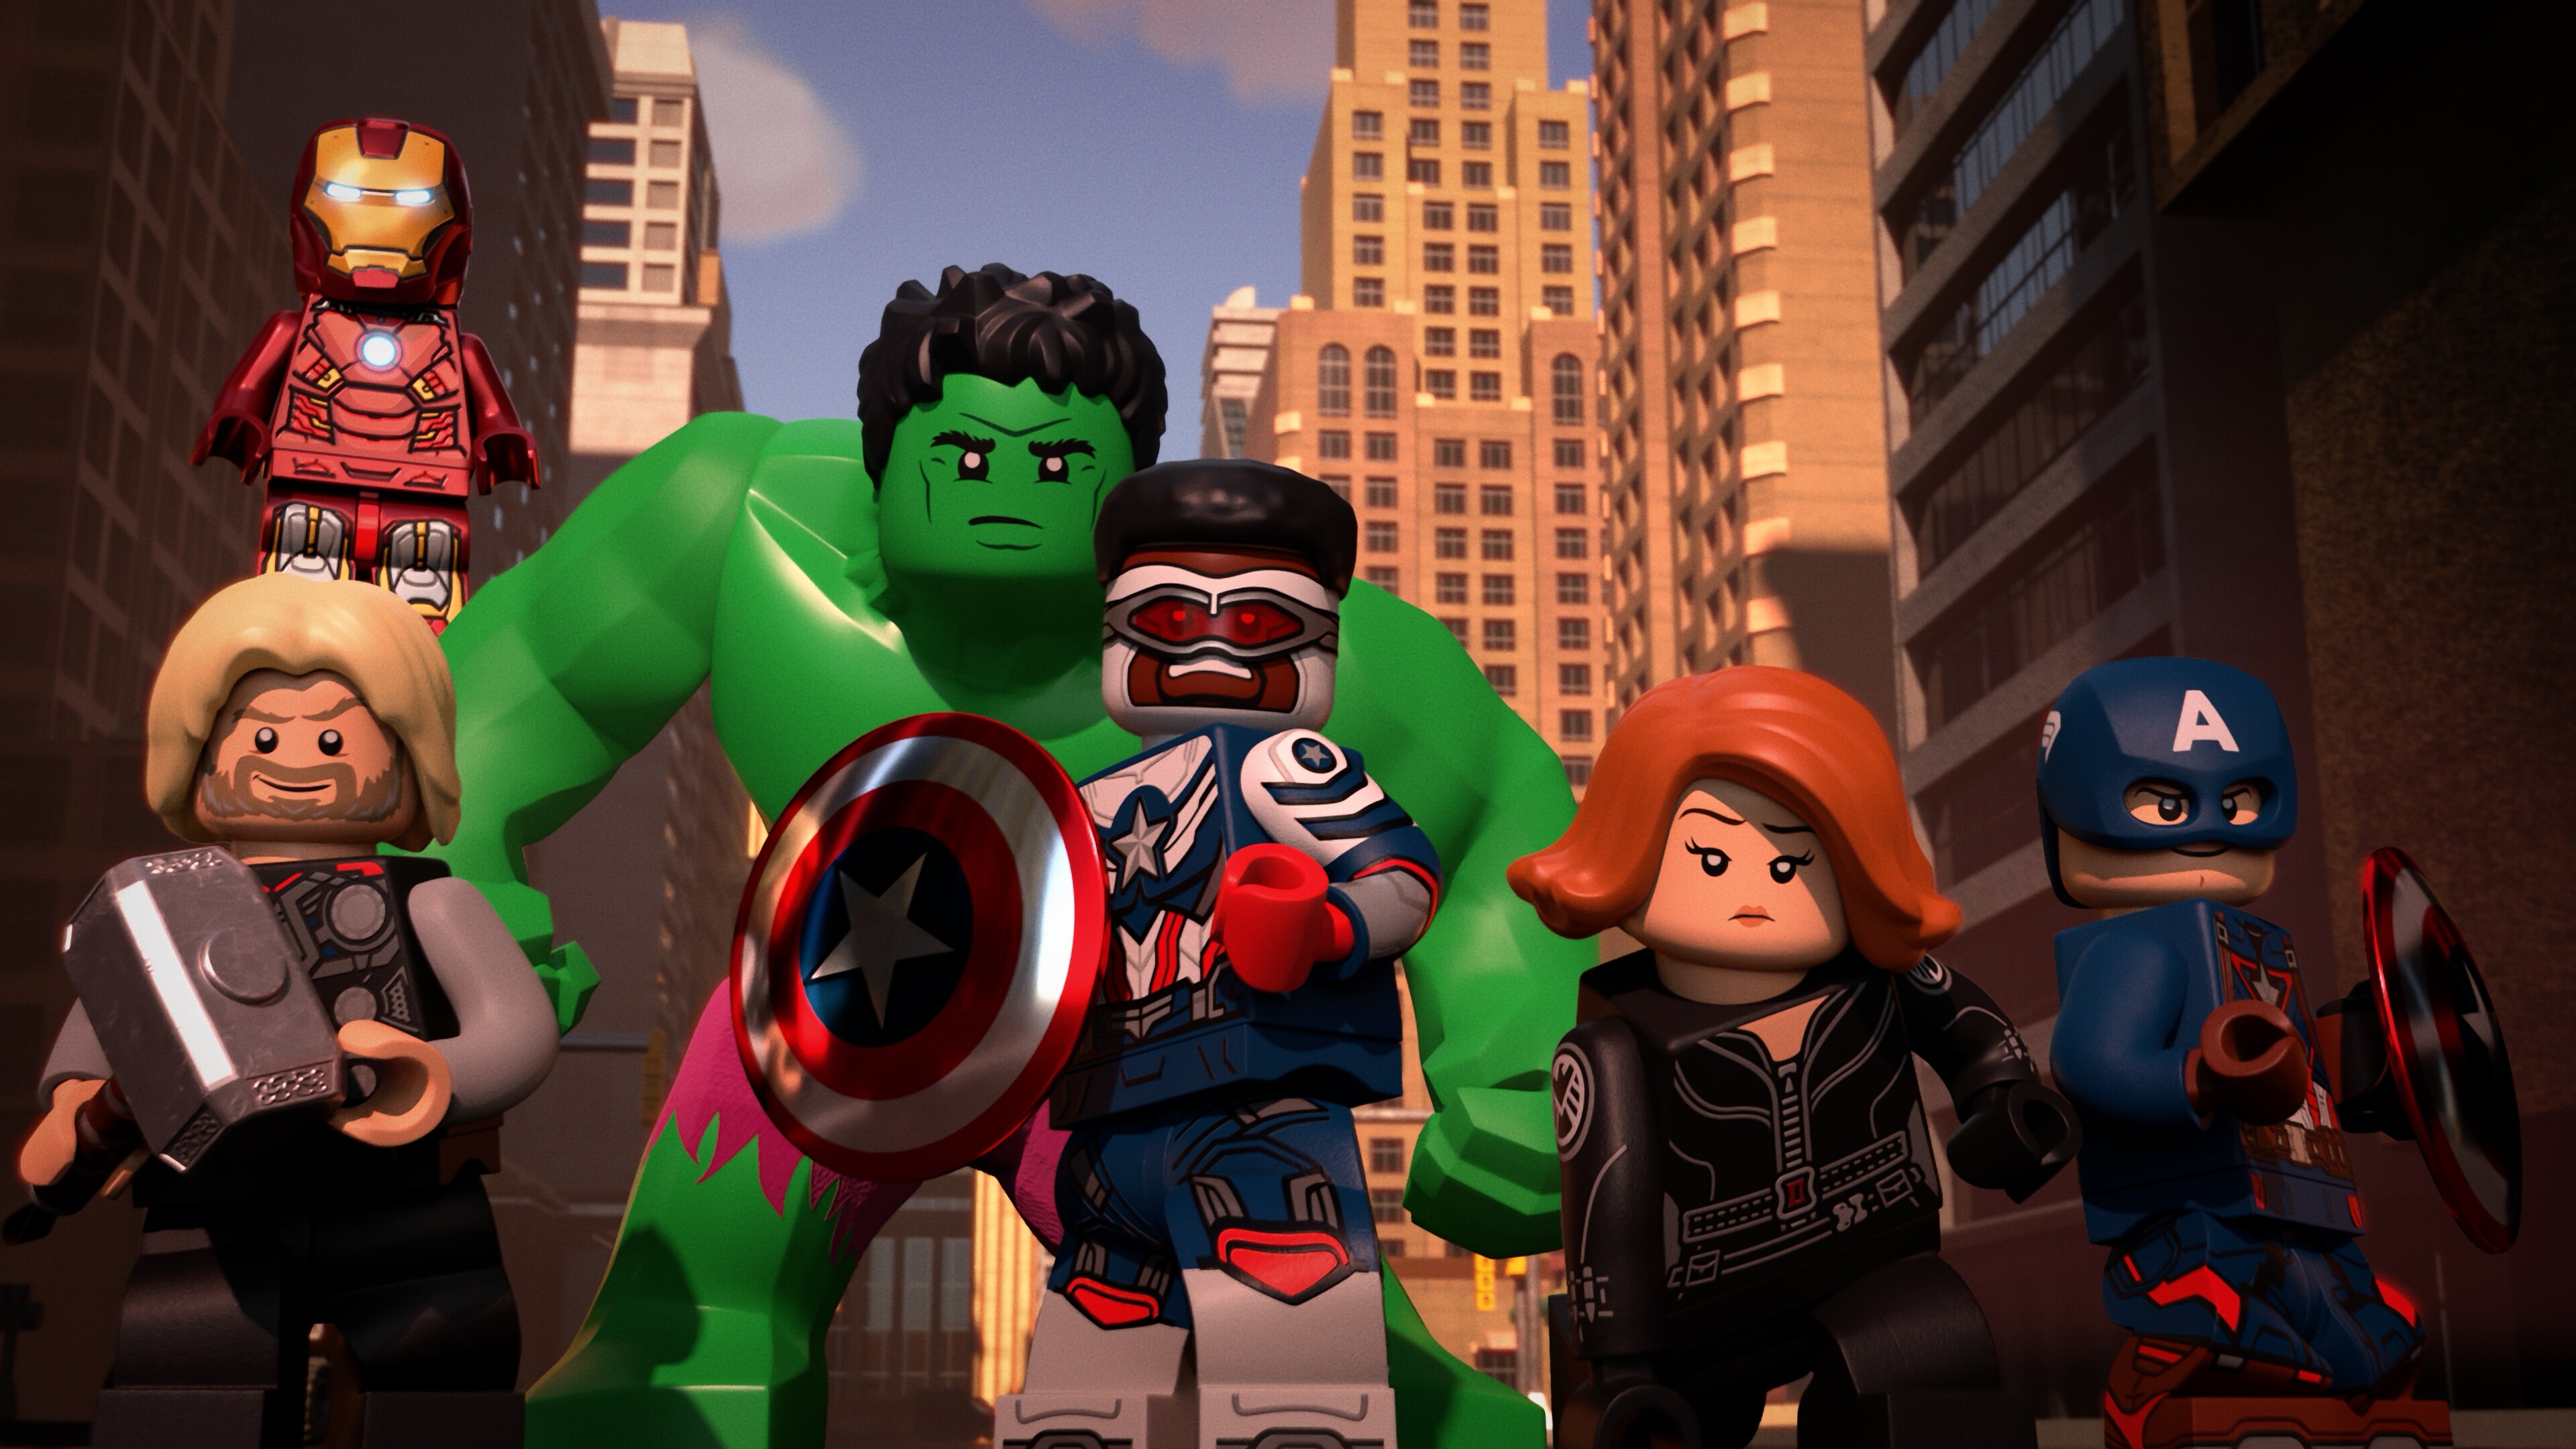 Marvel - Avengers